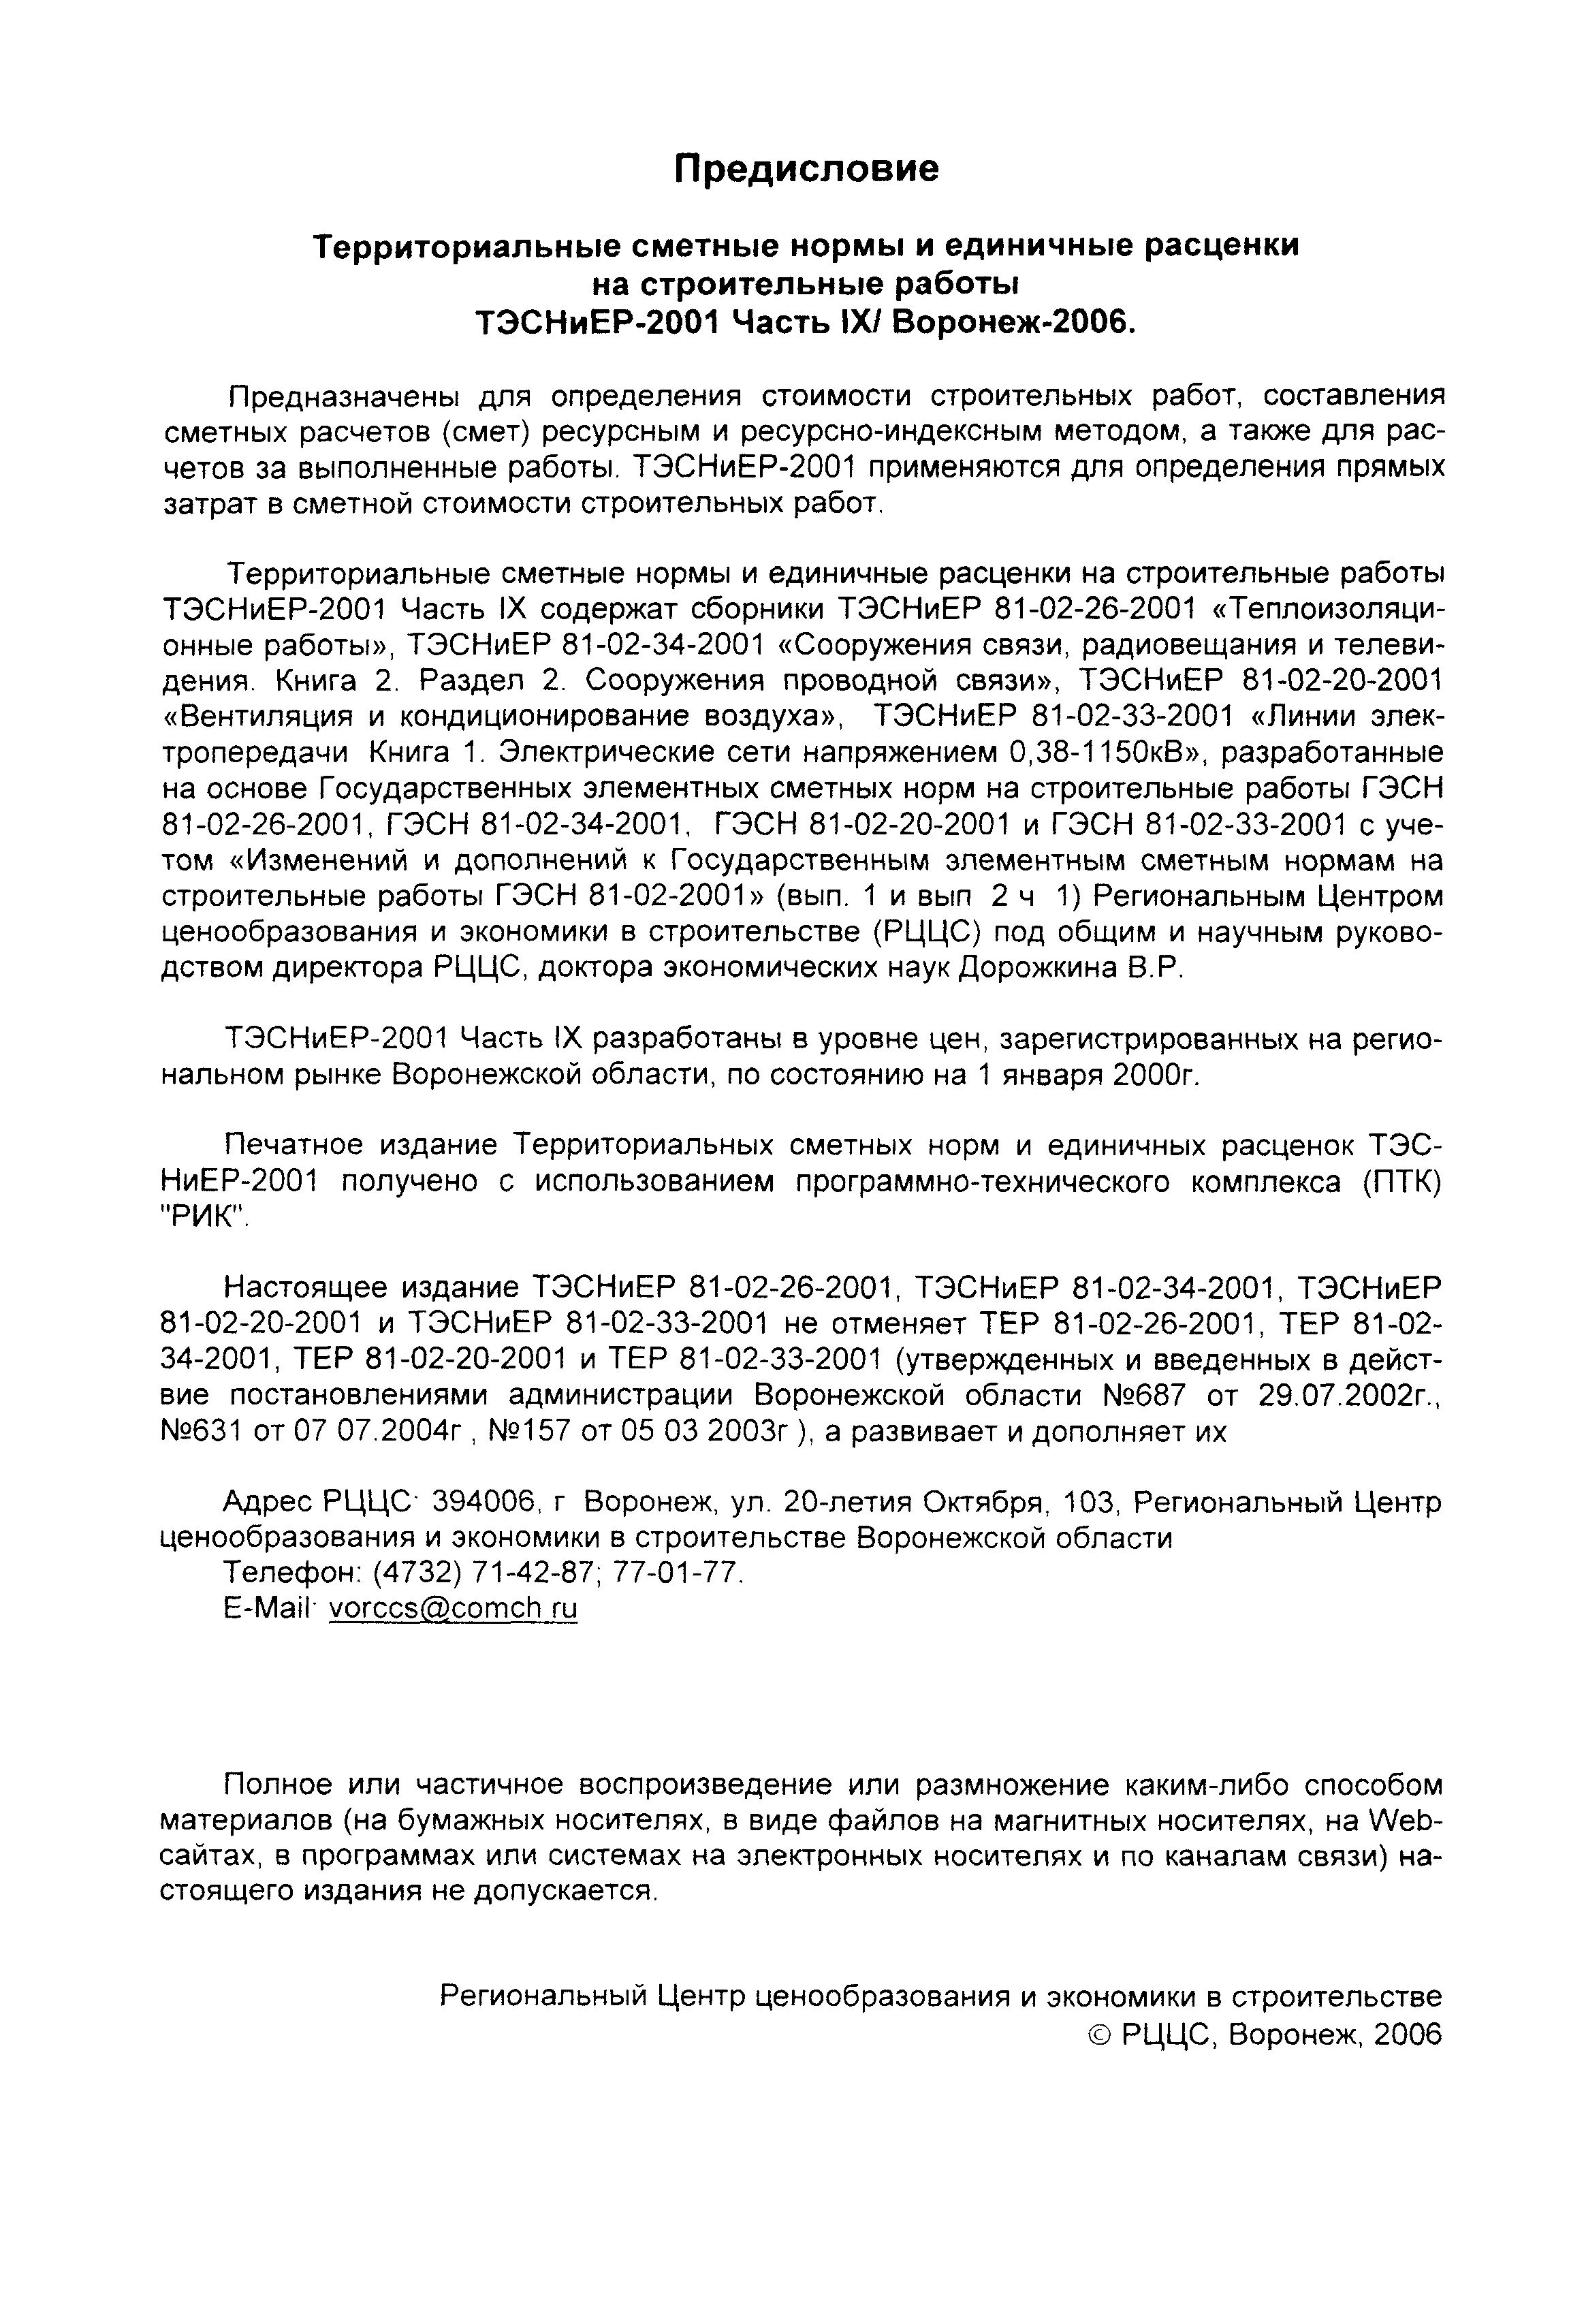 ТЭСНиЕР Воронежской области 81-02-20-2001